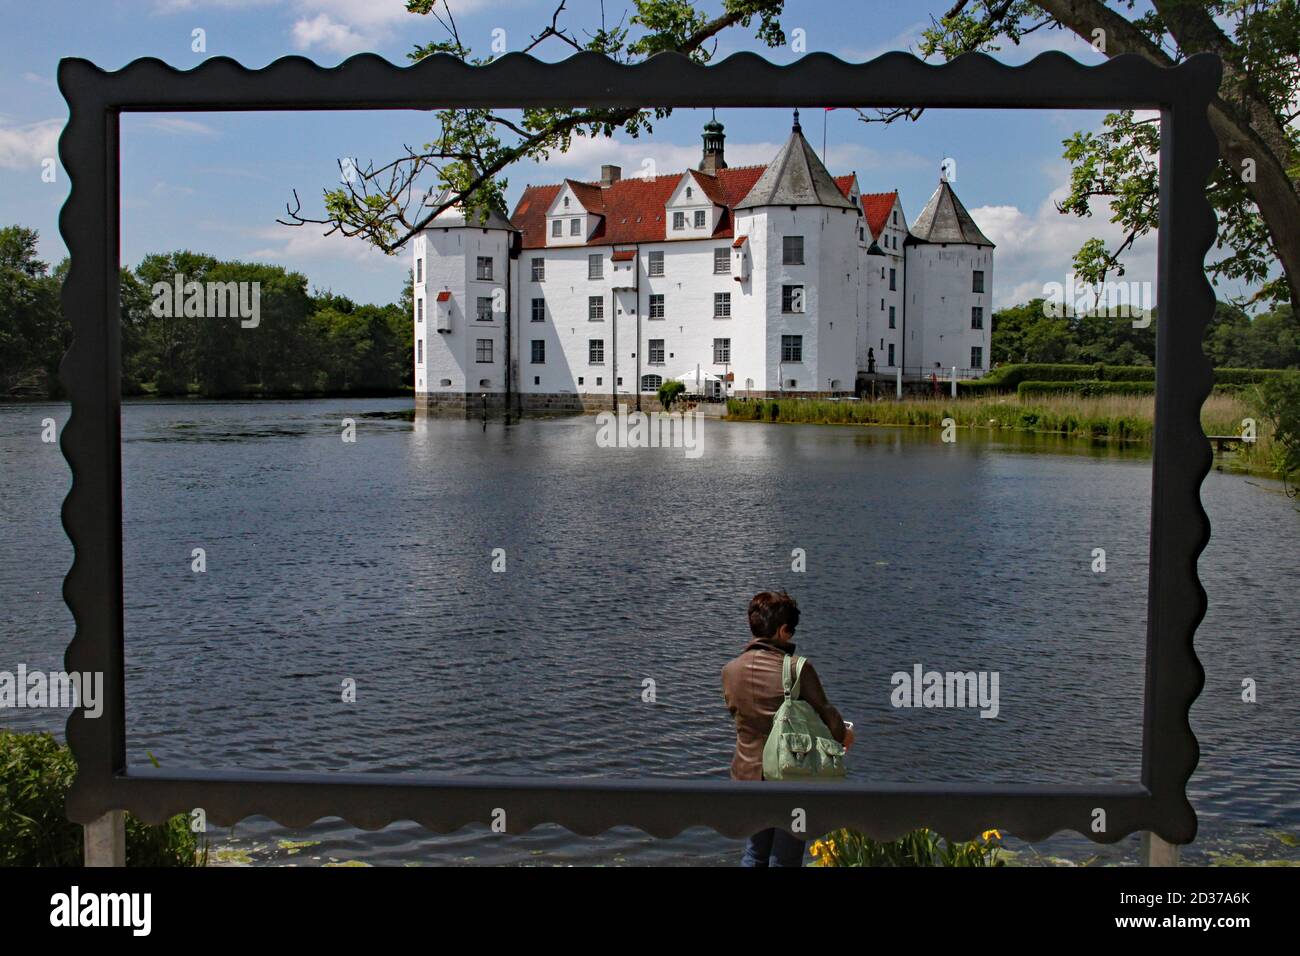 Lo storico castello bianco di Glucksburg a Flensburg in Germania. Qui vivevano gli antenati della famiglia reale danese. Foto Stock